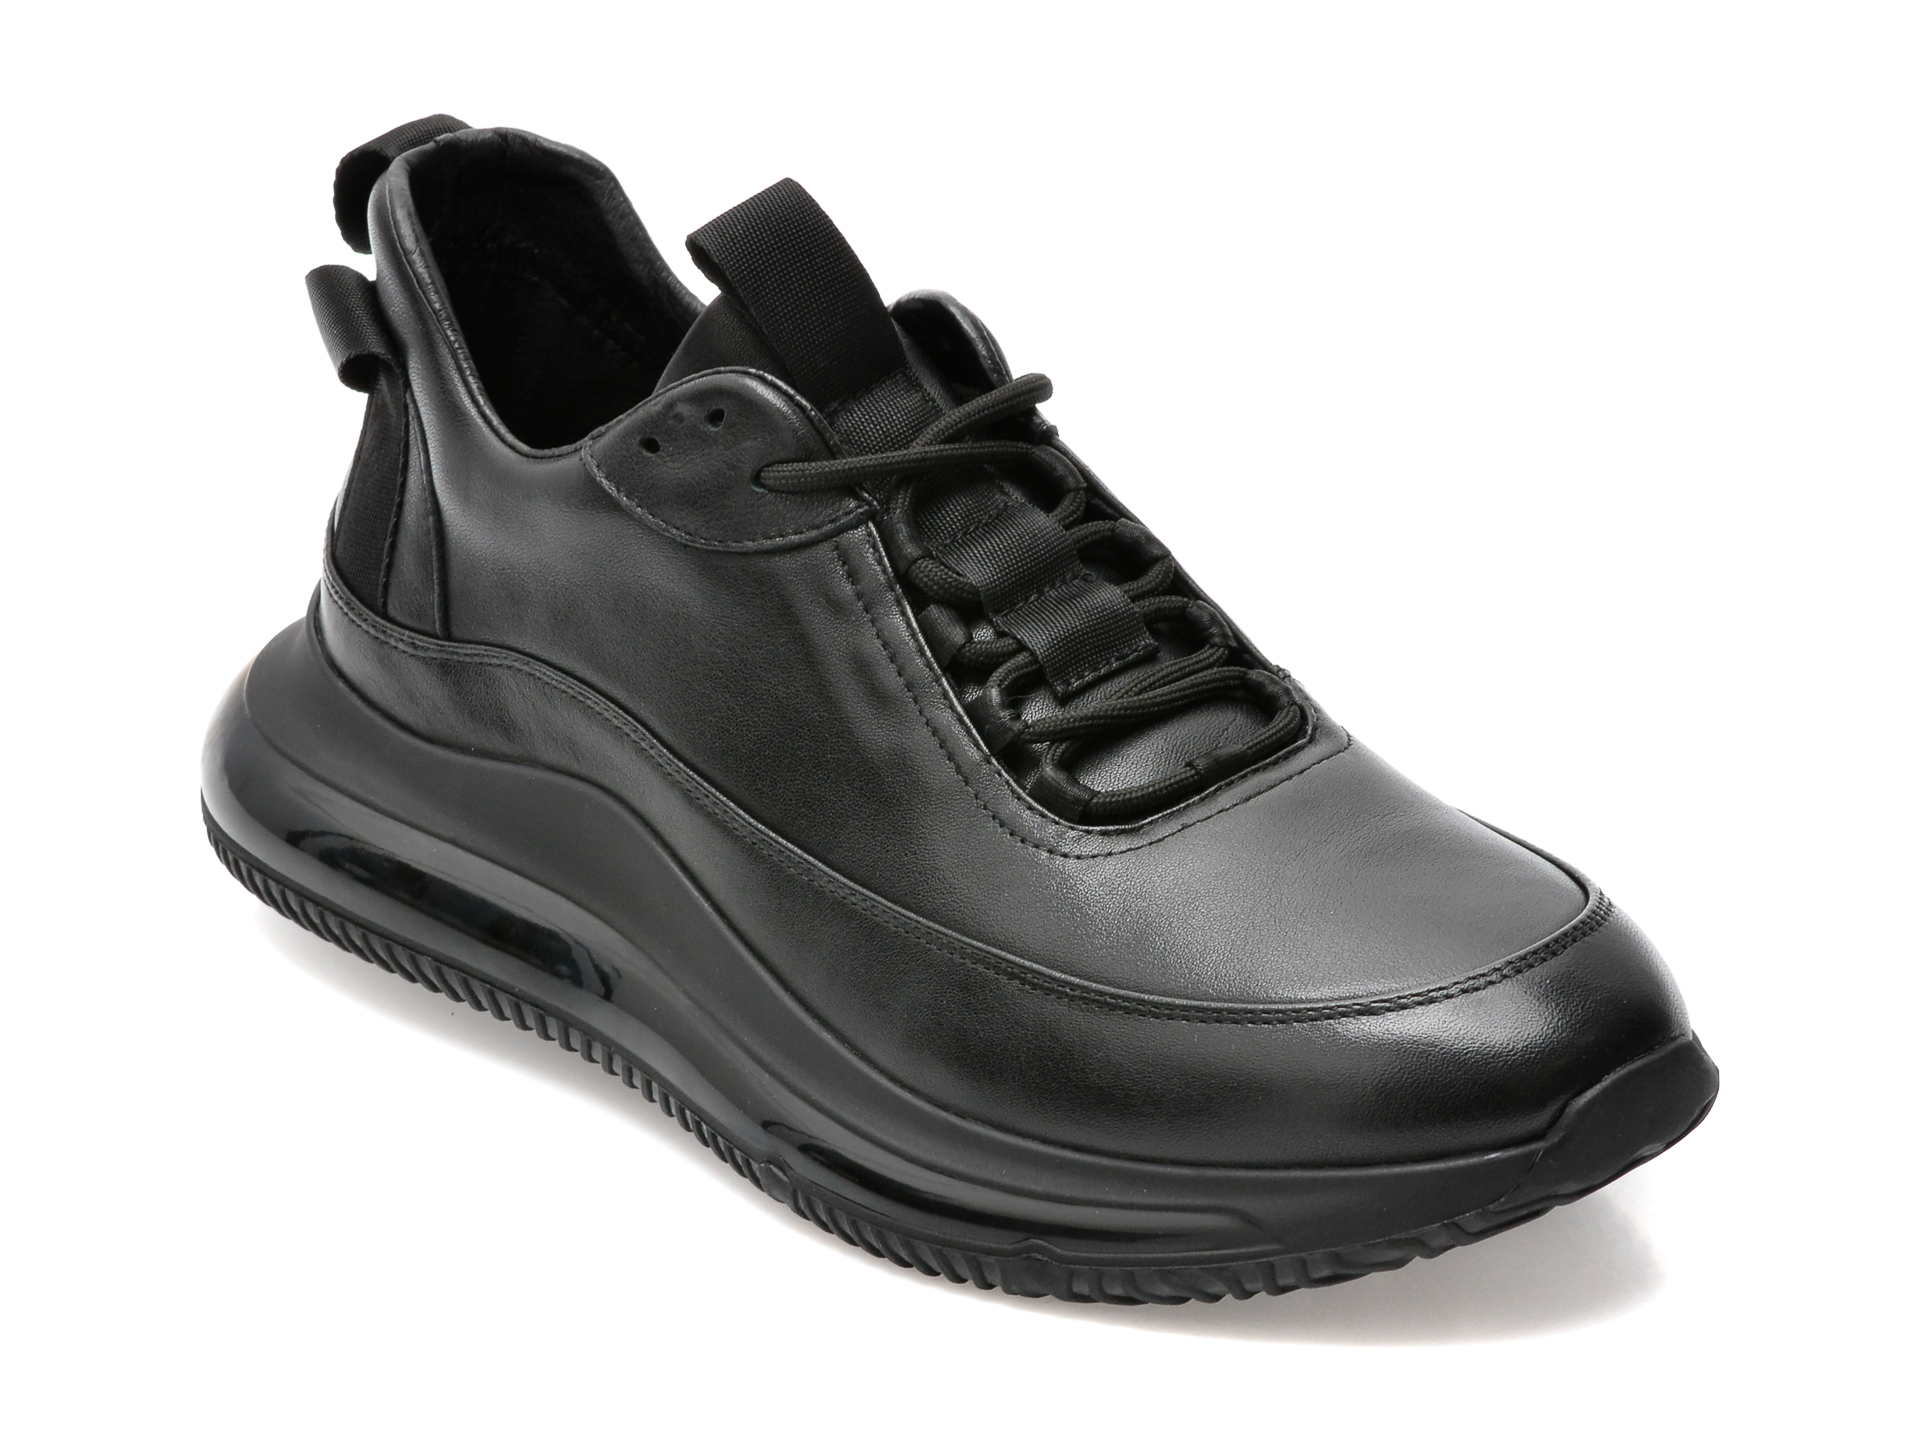 Pantofi sport OTTER negri, E600002, din piele naturala imagine reduceri black friday 2021 /barbati/pantofi